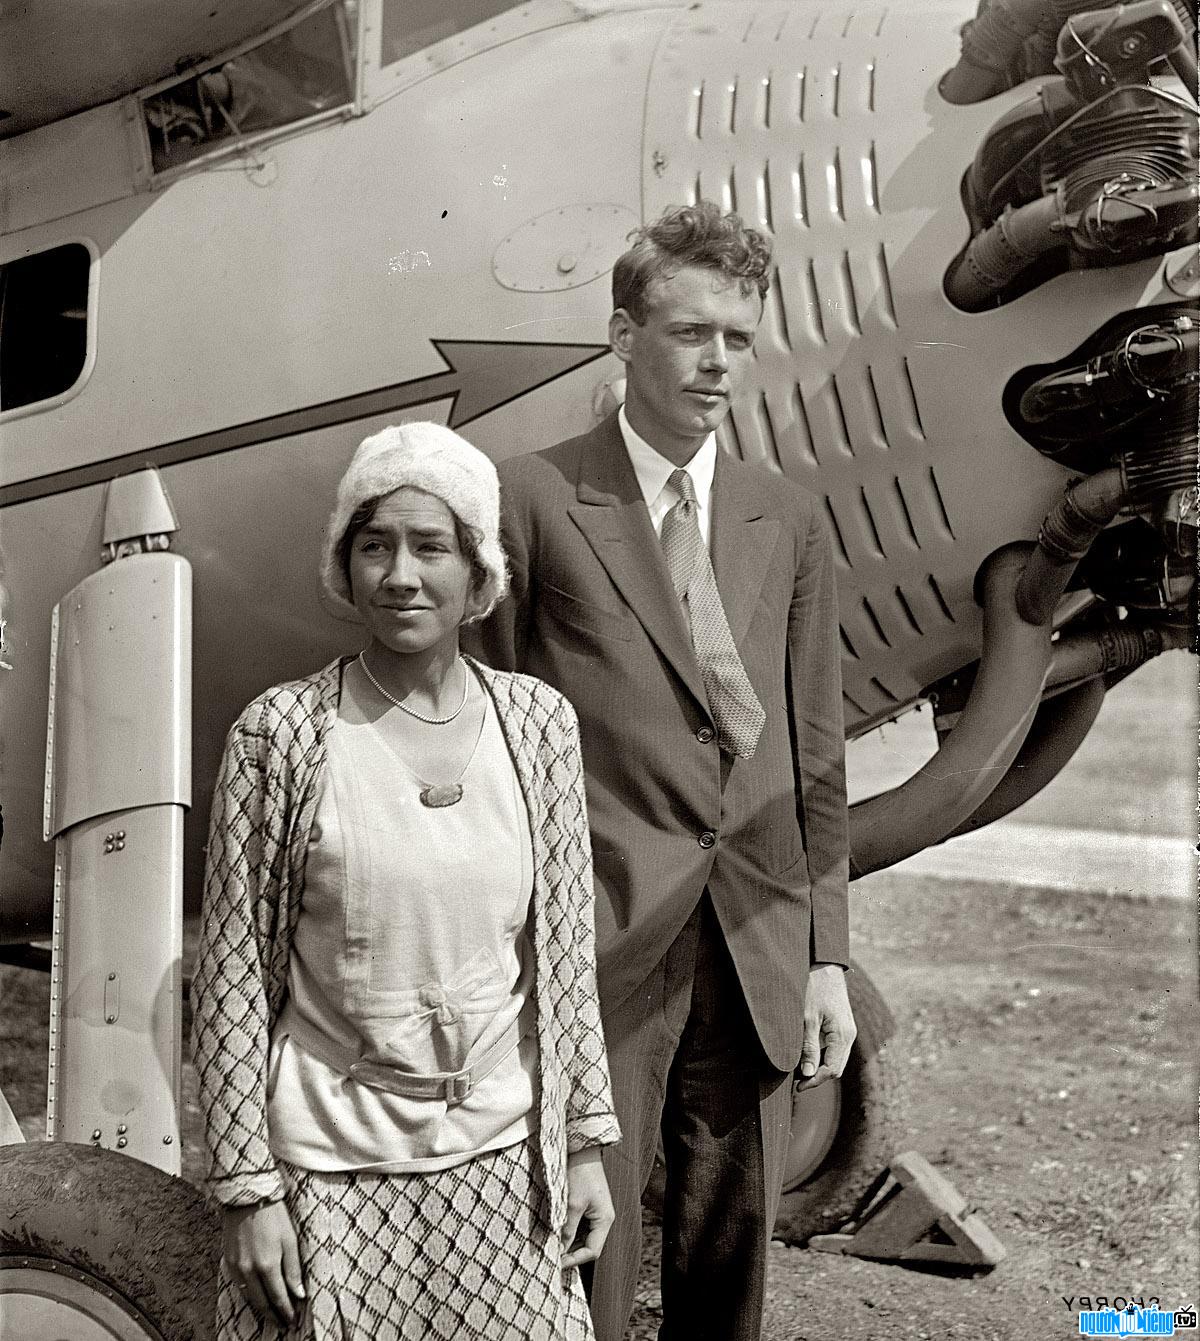 Hình ảnh về Charles Lindbergh - phi công nổi tiếng người Mỹ